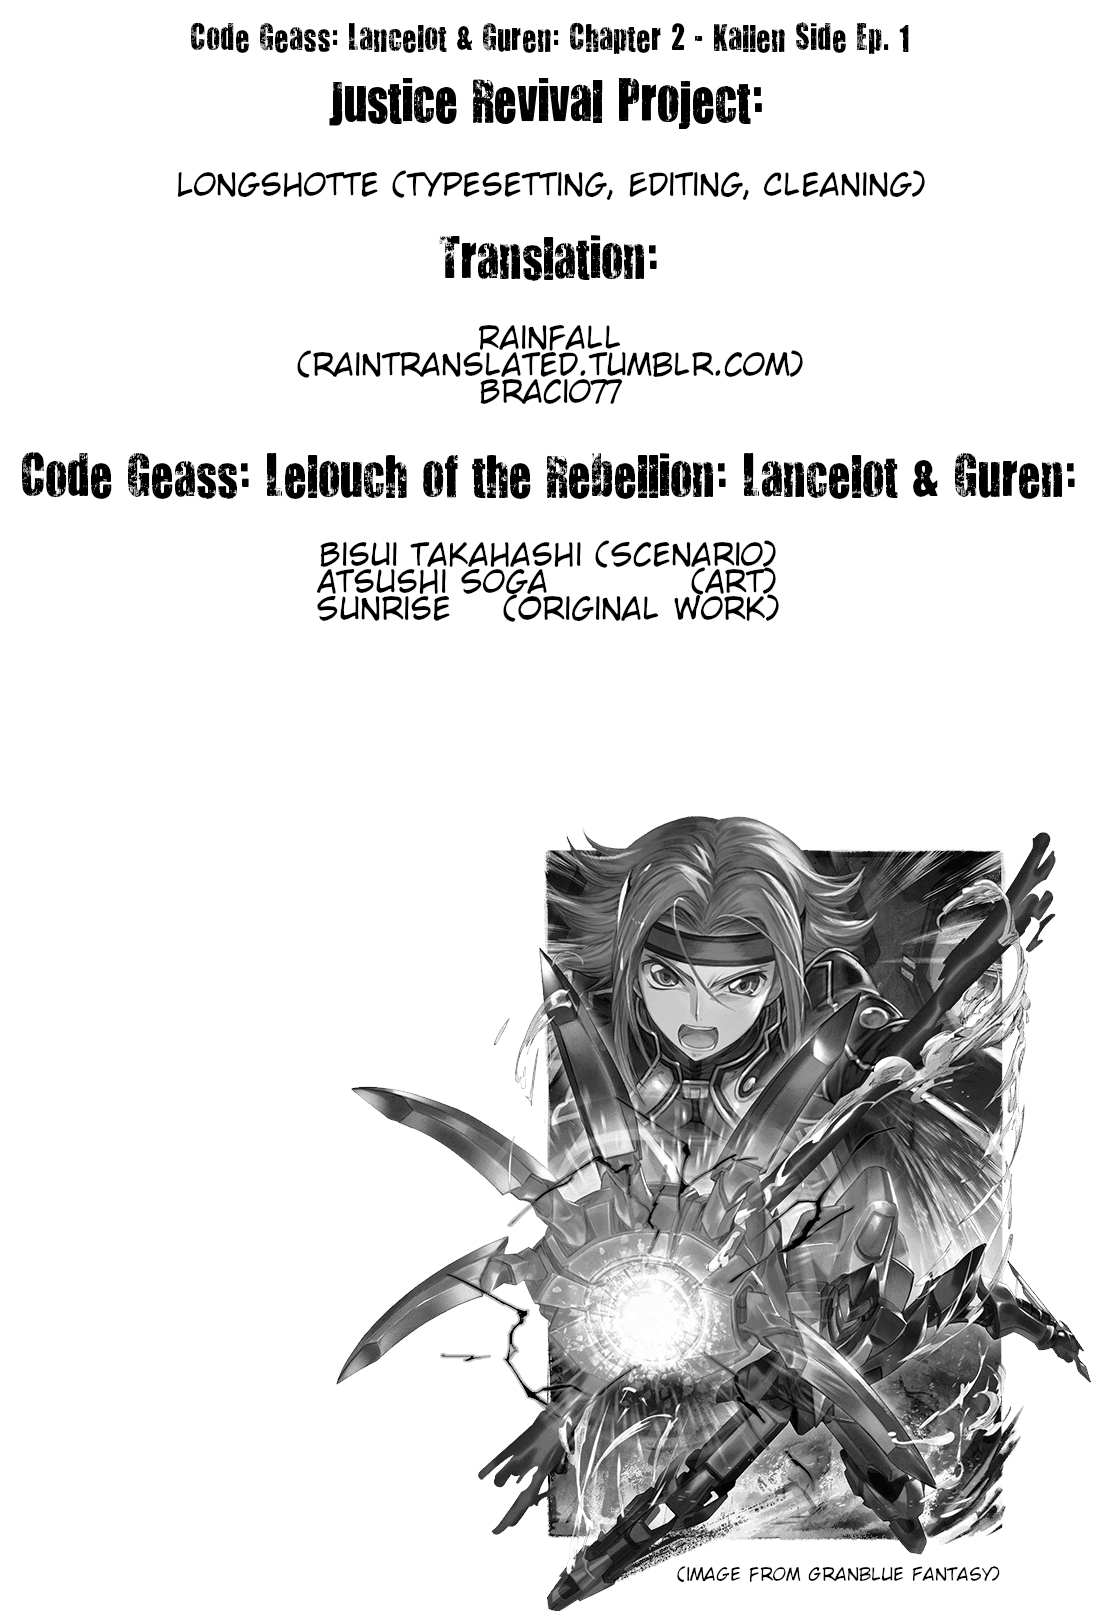 Code Geass: Lelouch of the Rebellion: Lancelot & Guren Vol. 1 Ch. 2 Side